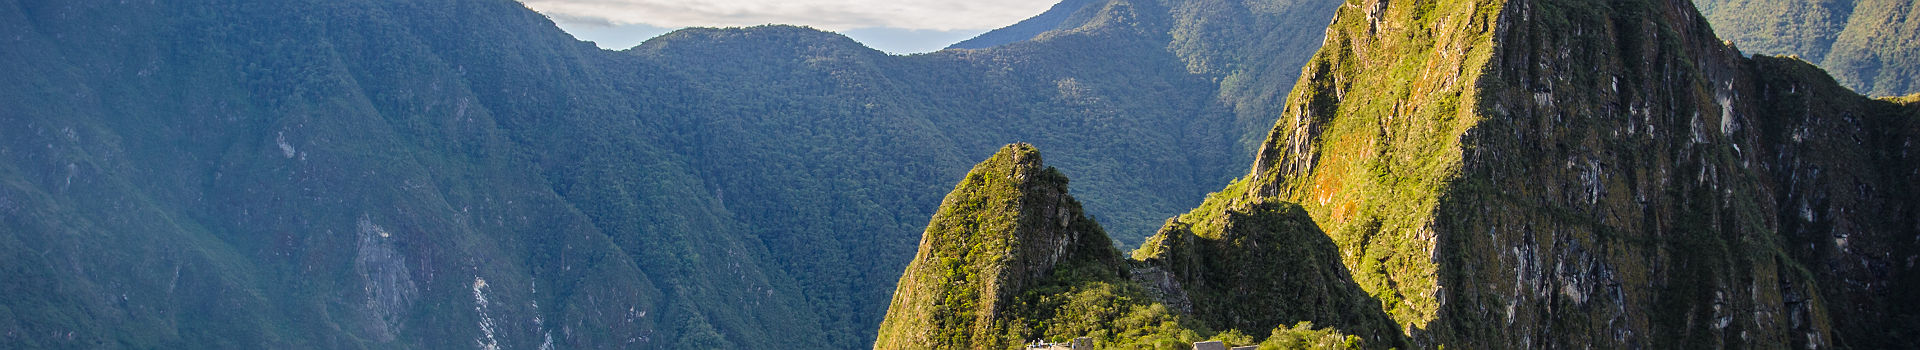 Pérou - Vue sur le site inca de Machu Picchu